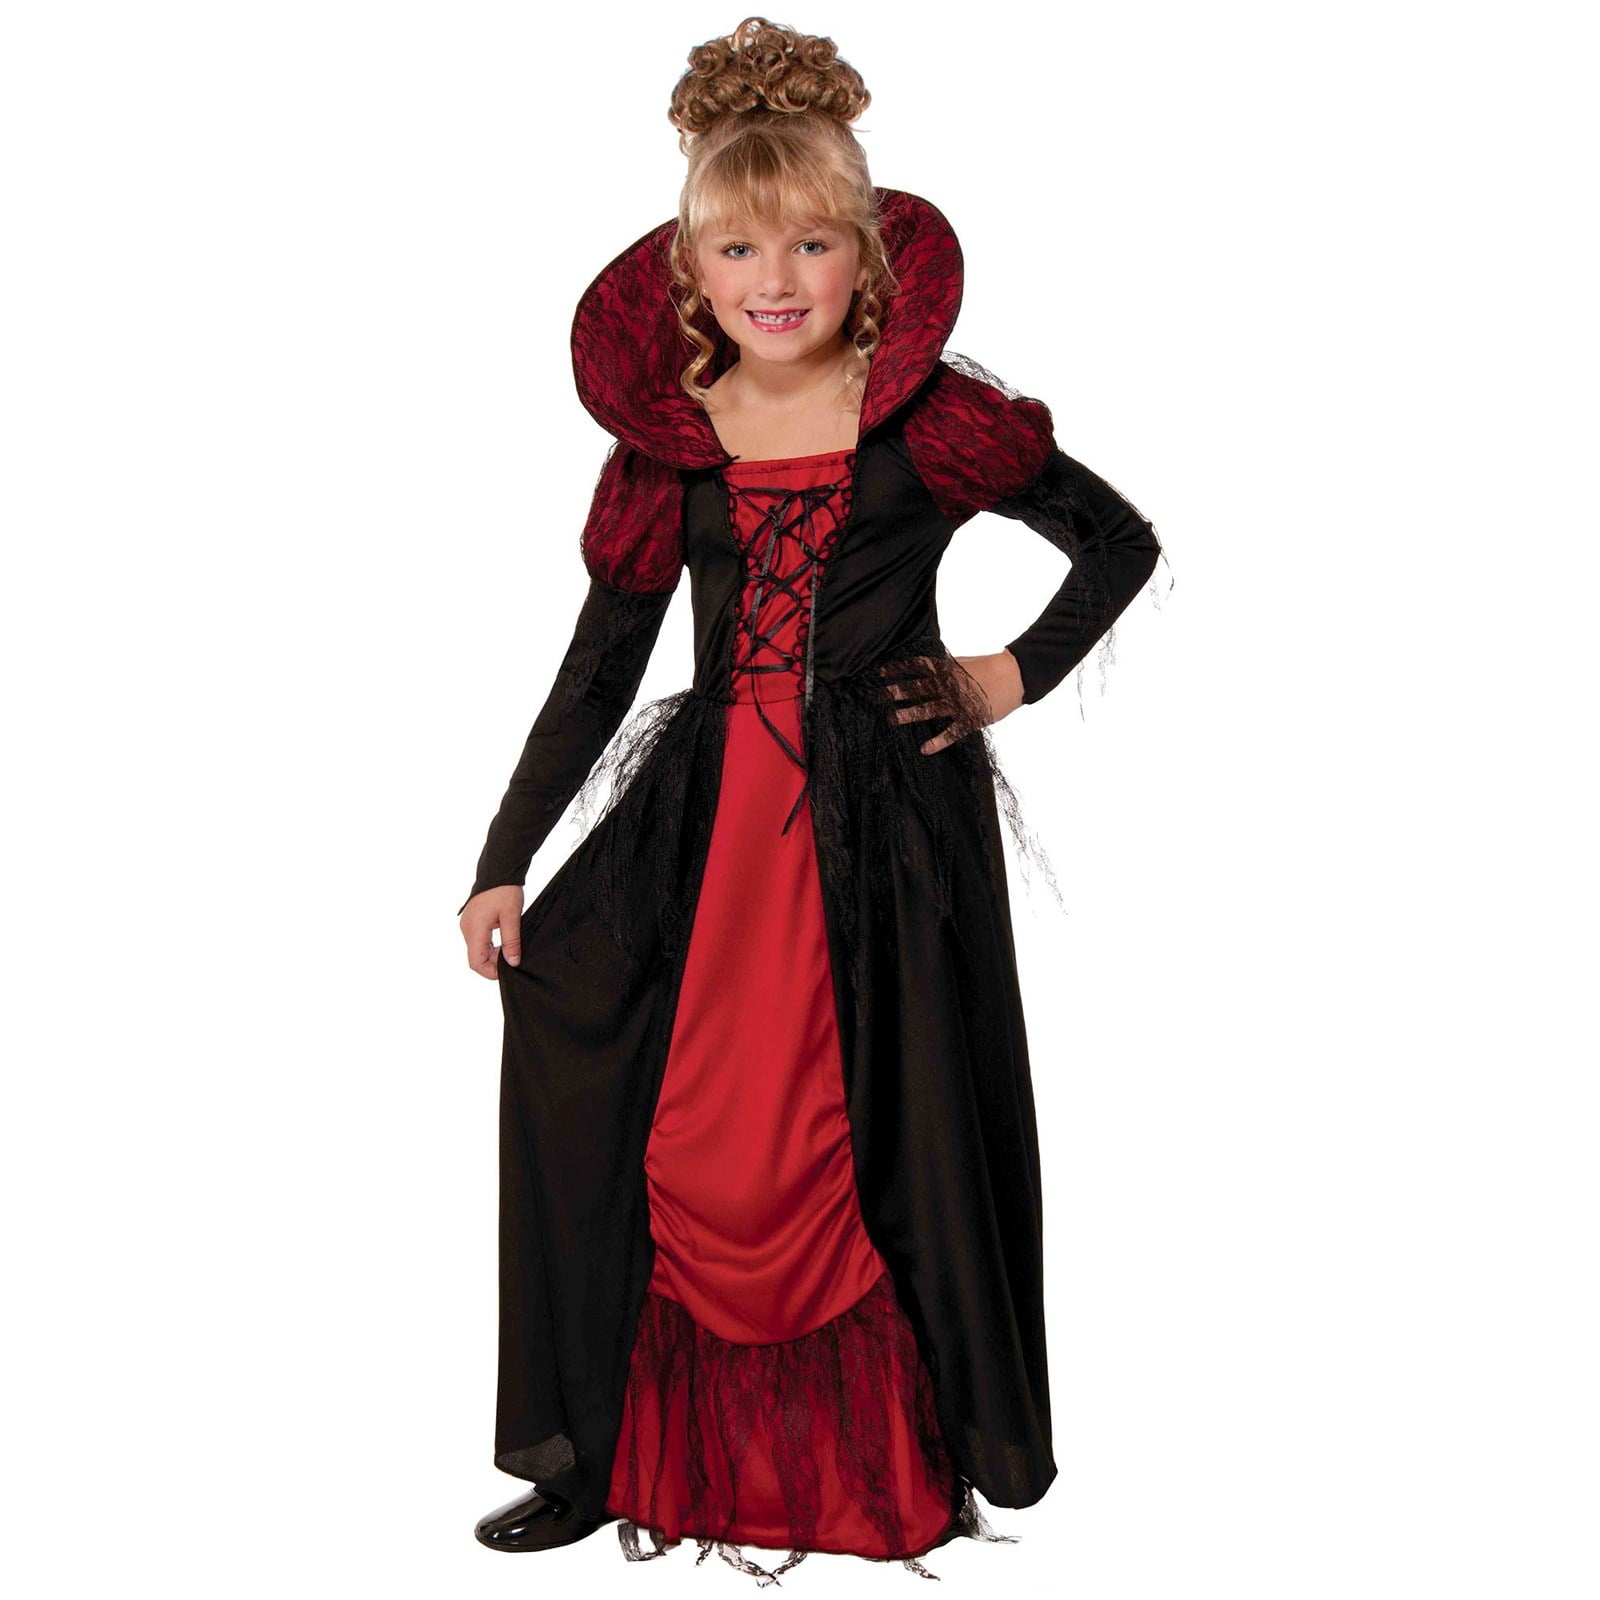 Vampiress Queen Costume for Kids - Walmart.com